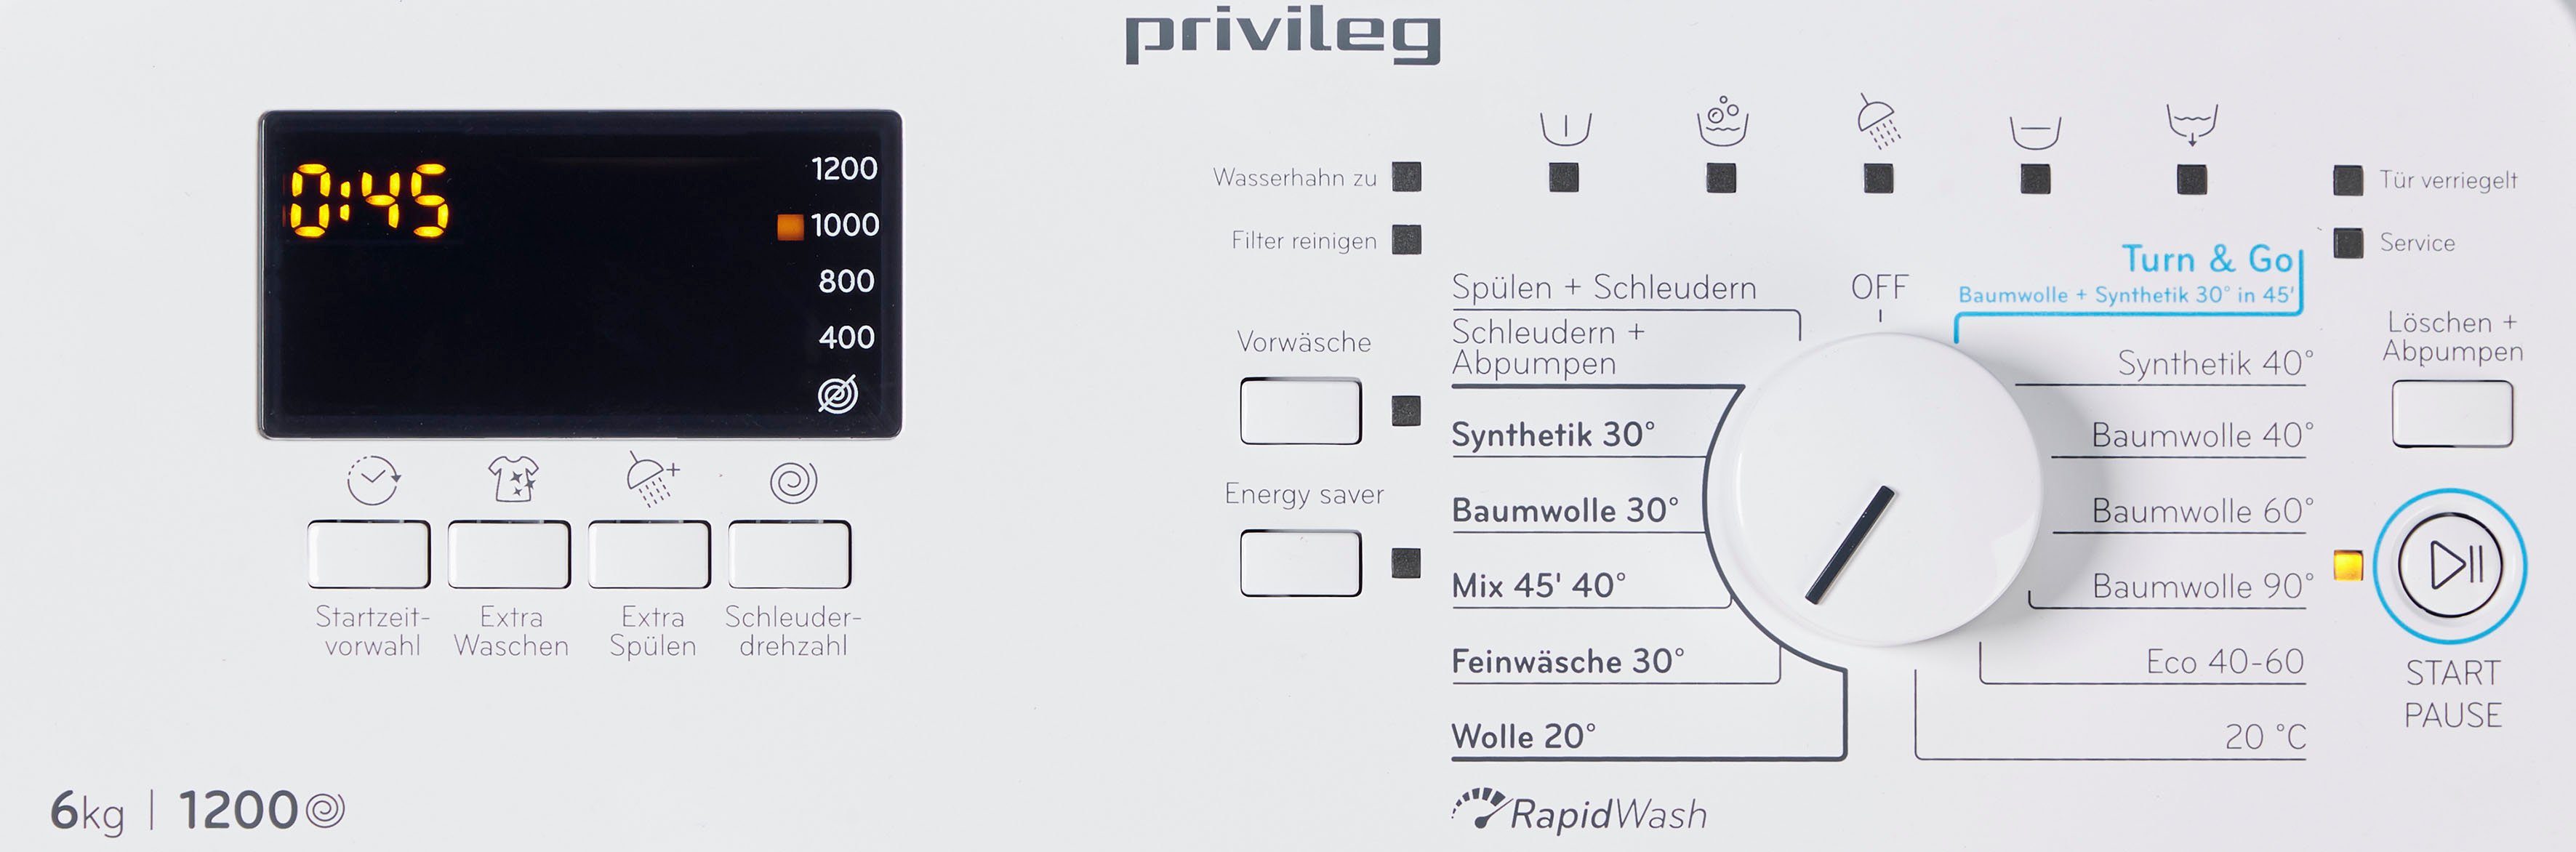 Waschmaschine Toplader Monate Herstellergarantie N, PWT Privileg kg, 1200 6 U/min, 50 C623